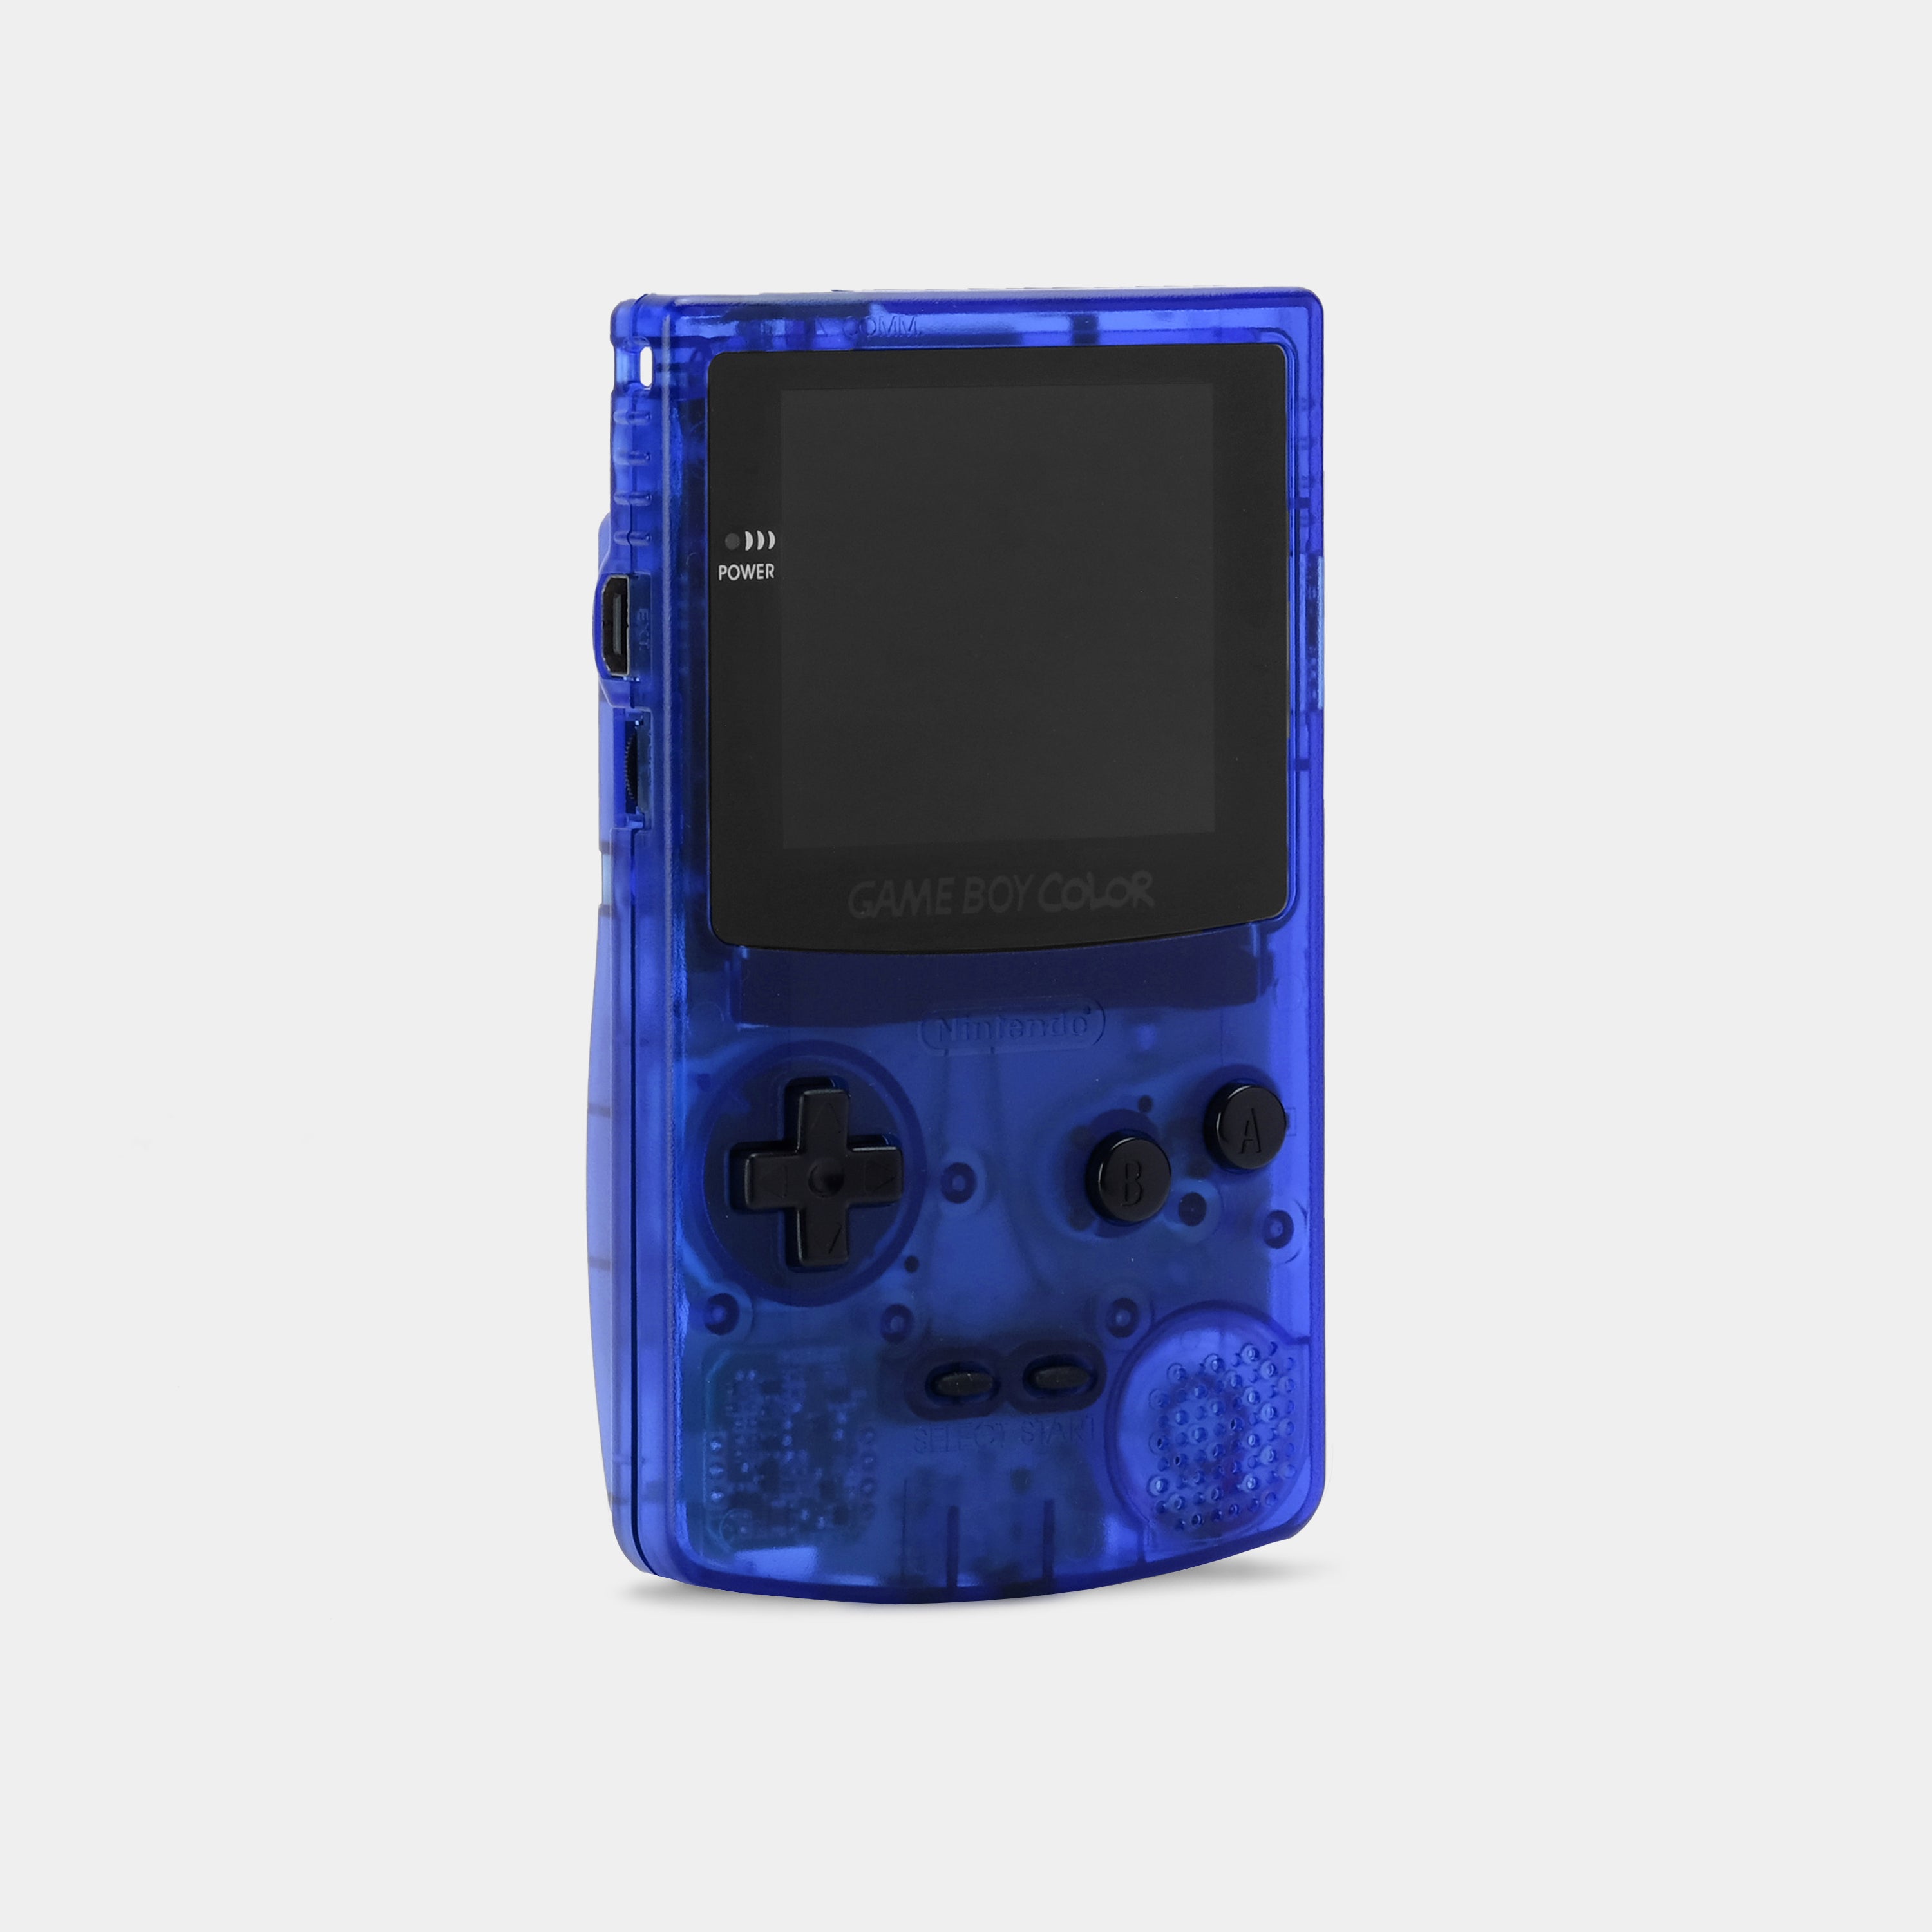 Game Boy Color Translucide